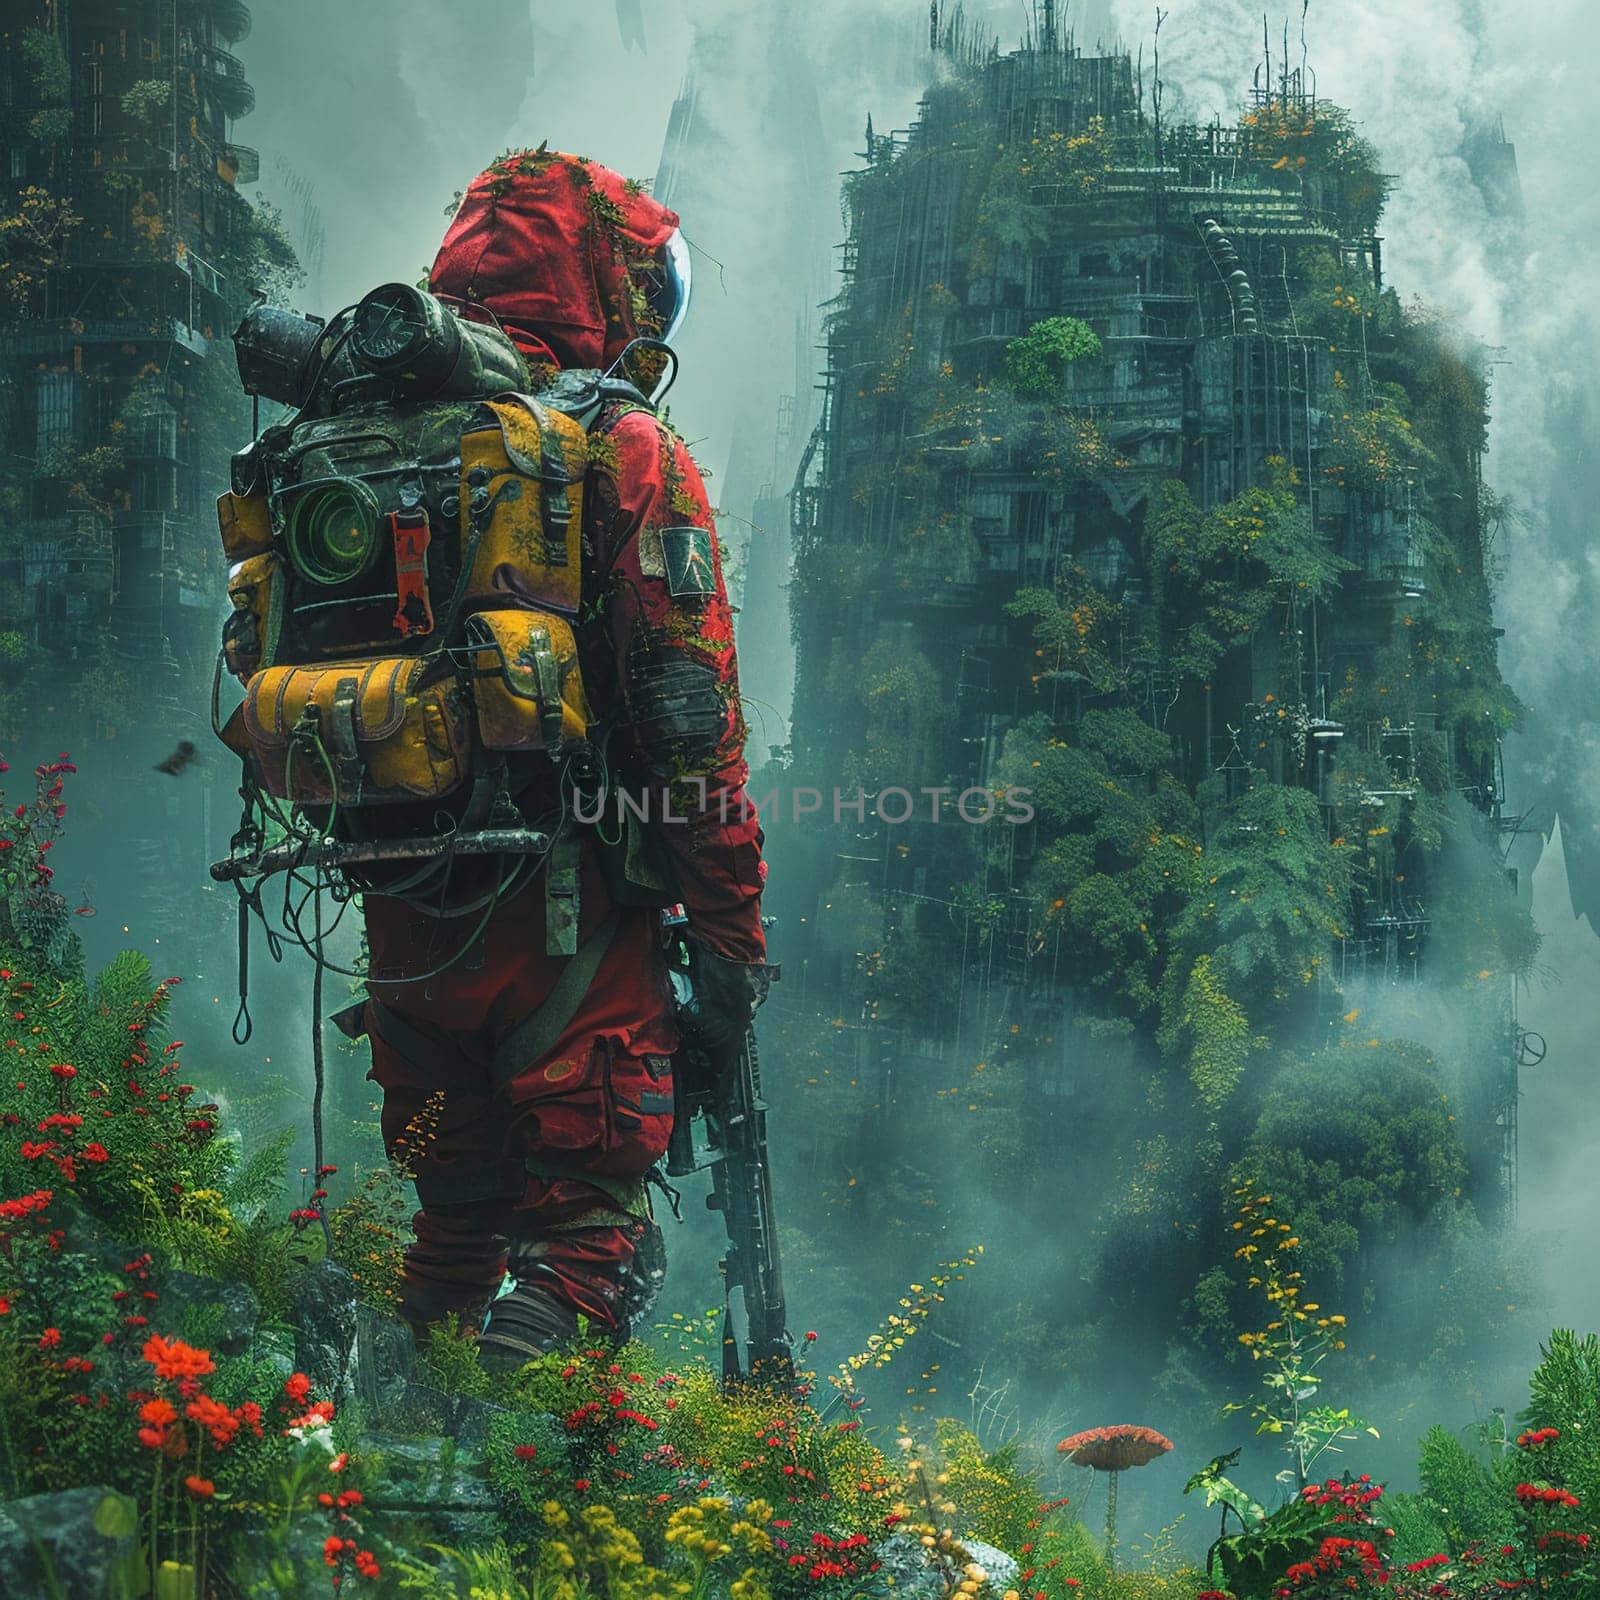 Adventurer trekking through an overgrown utopia by Benzoix